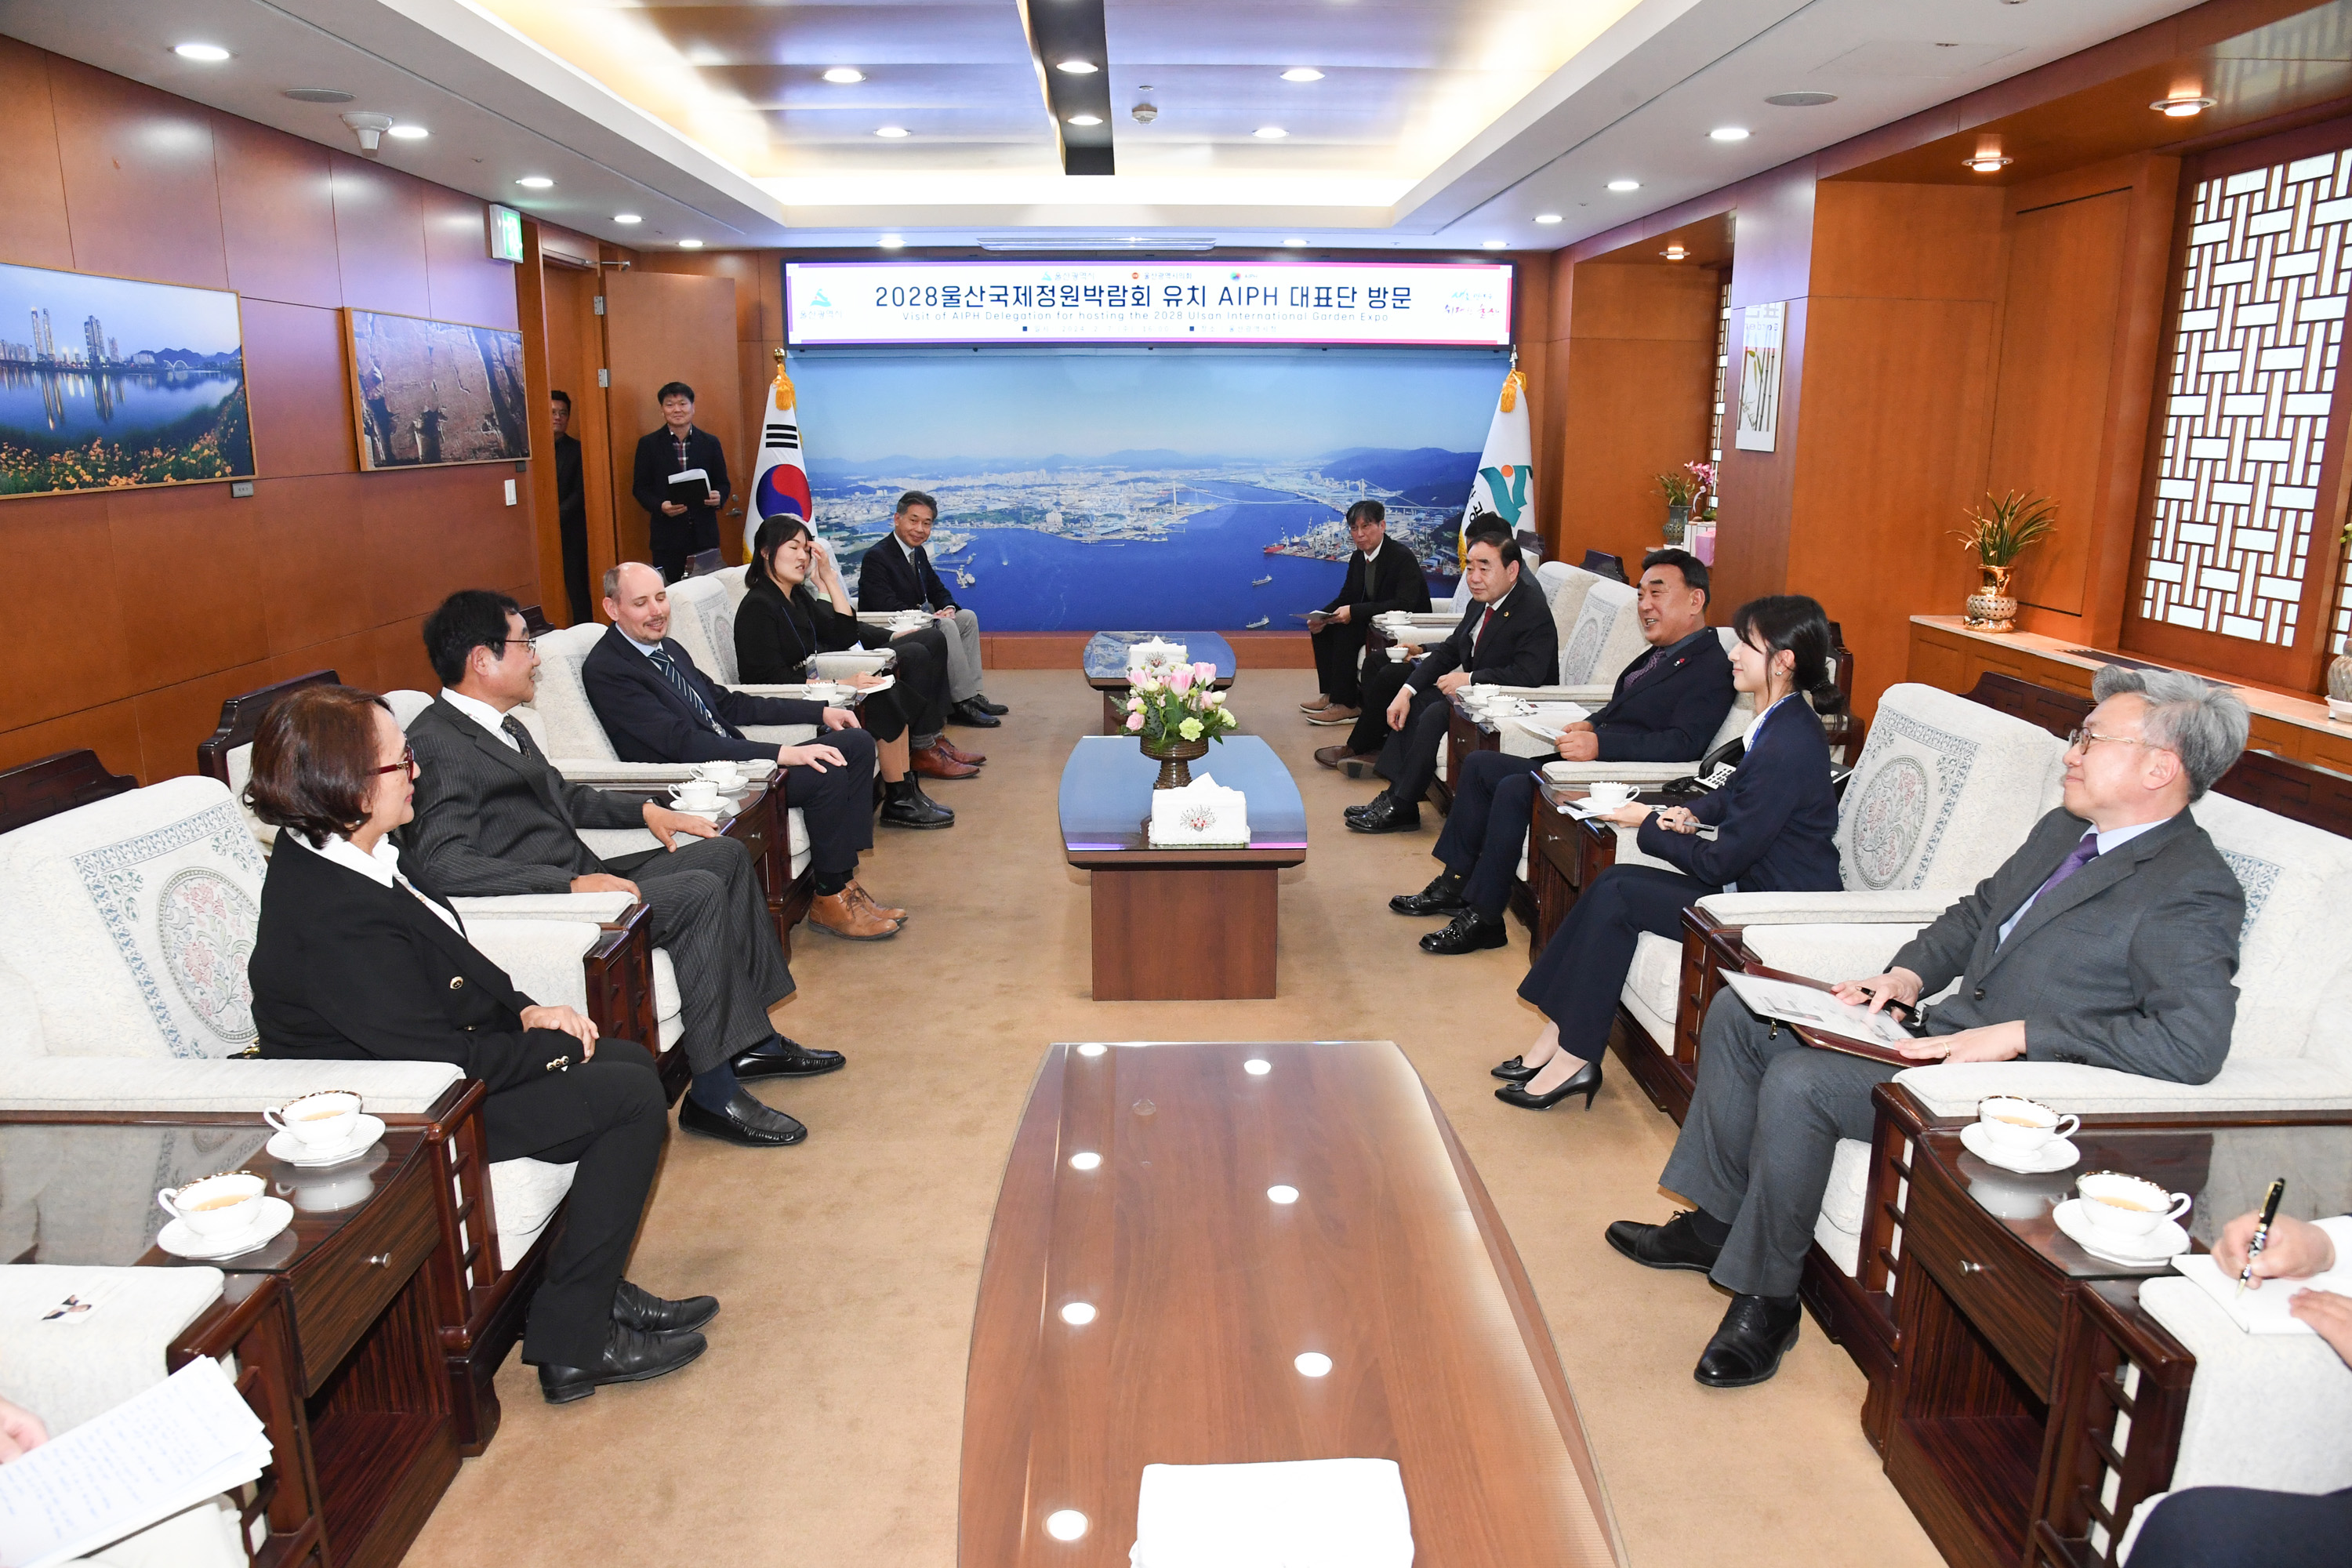 김기환 의장, 국제원예생산자협회(AIPH) 대표단 방문 환담3